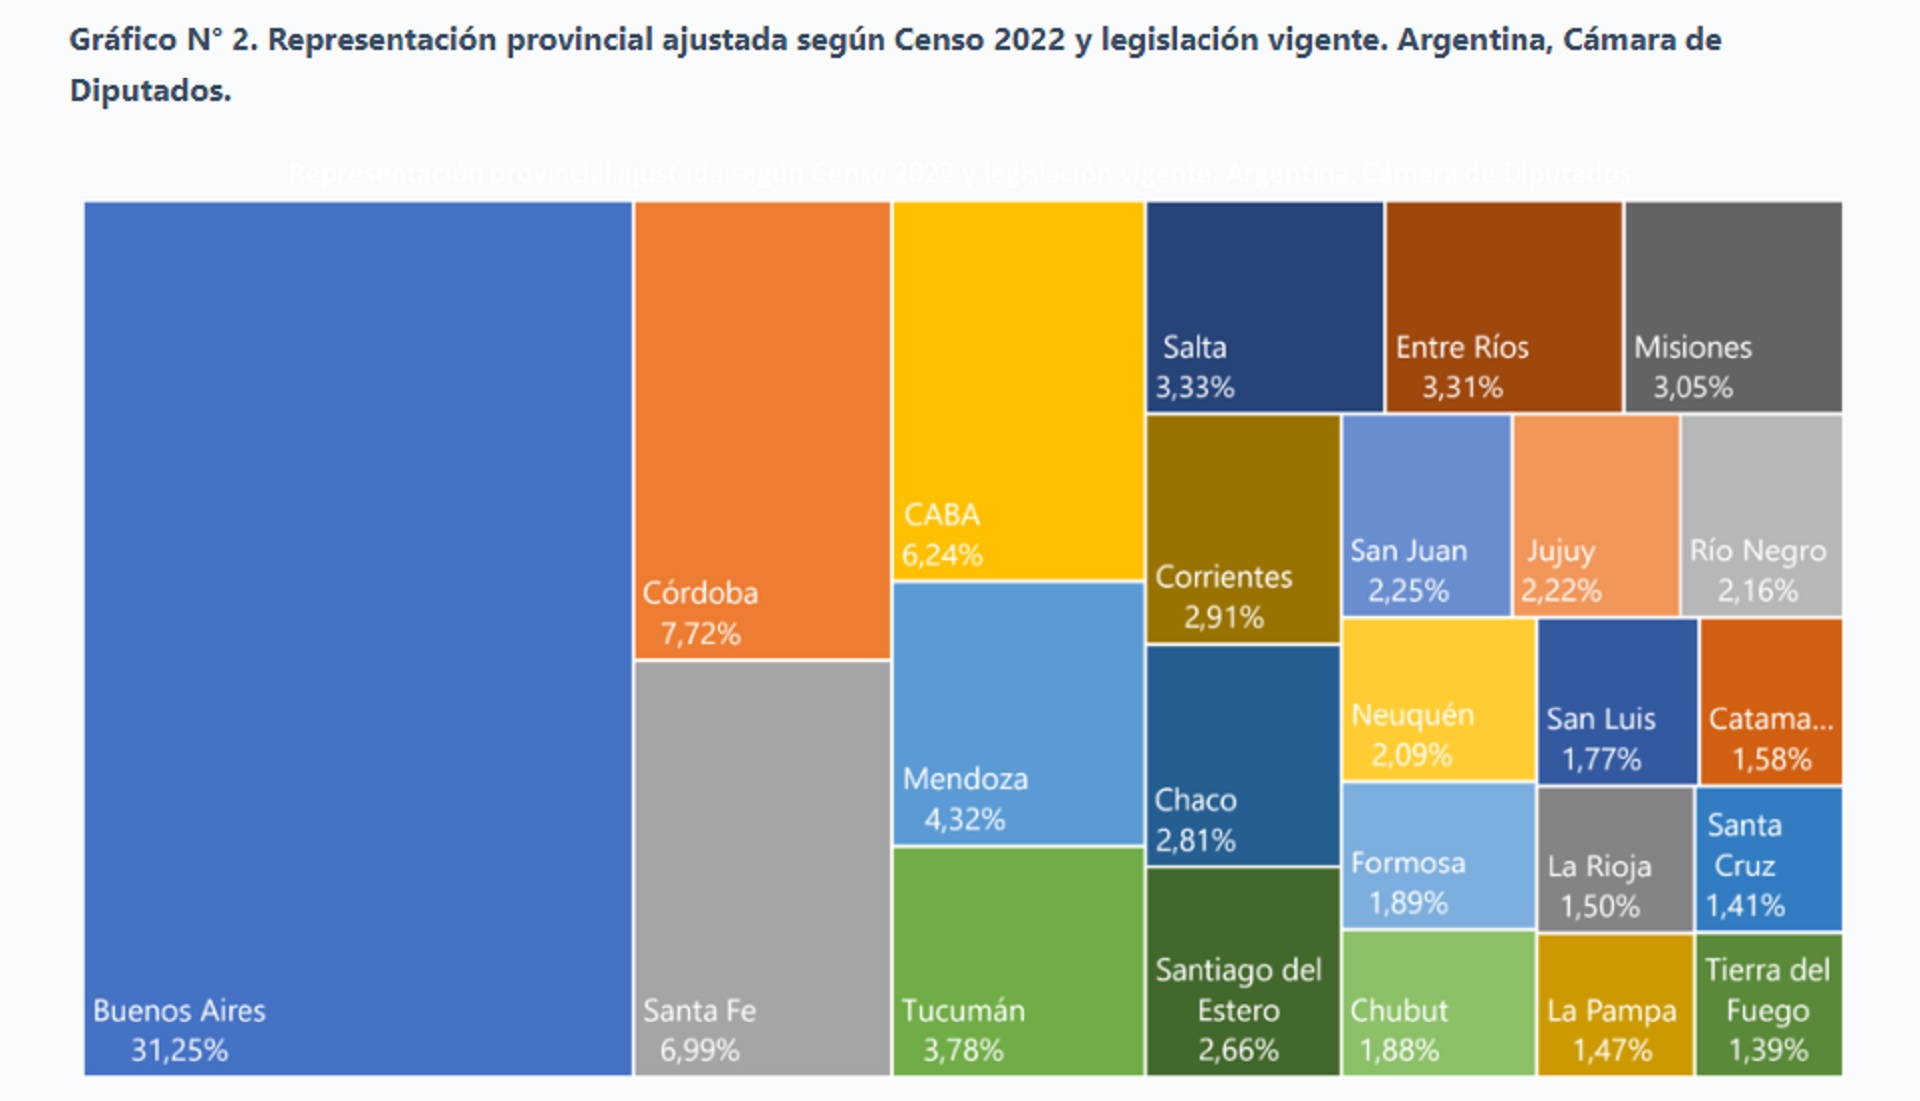 Actualización de la Cámara de Diputados según el censo 2022